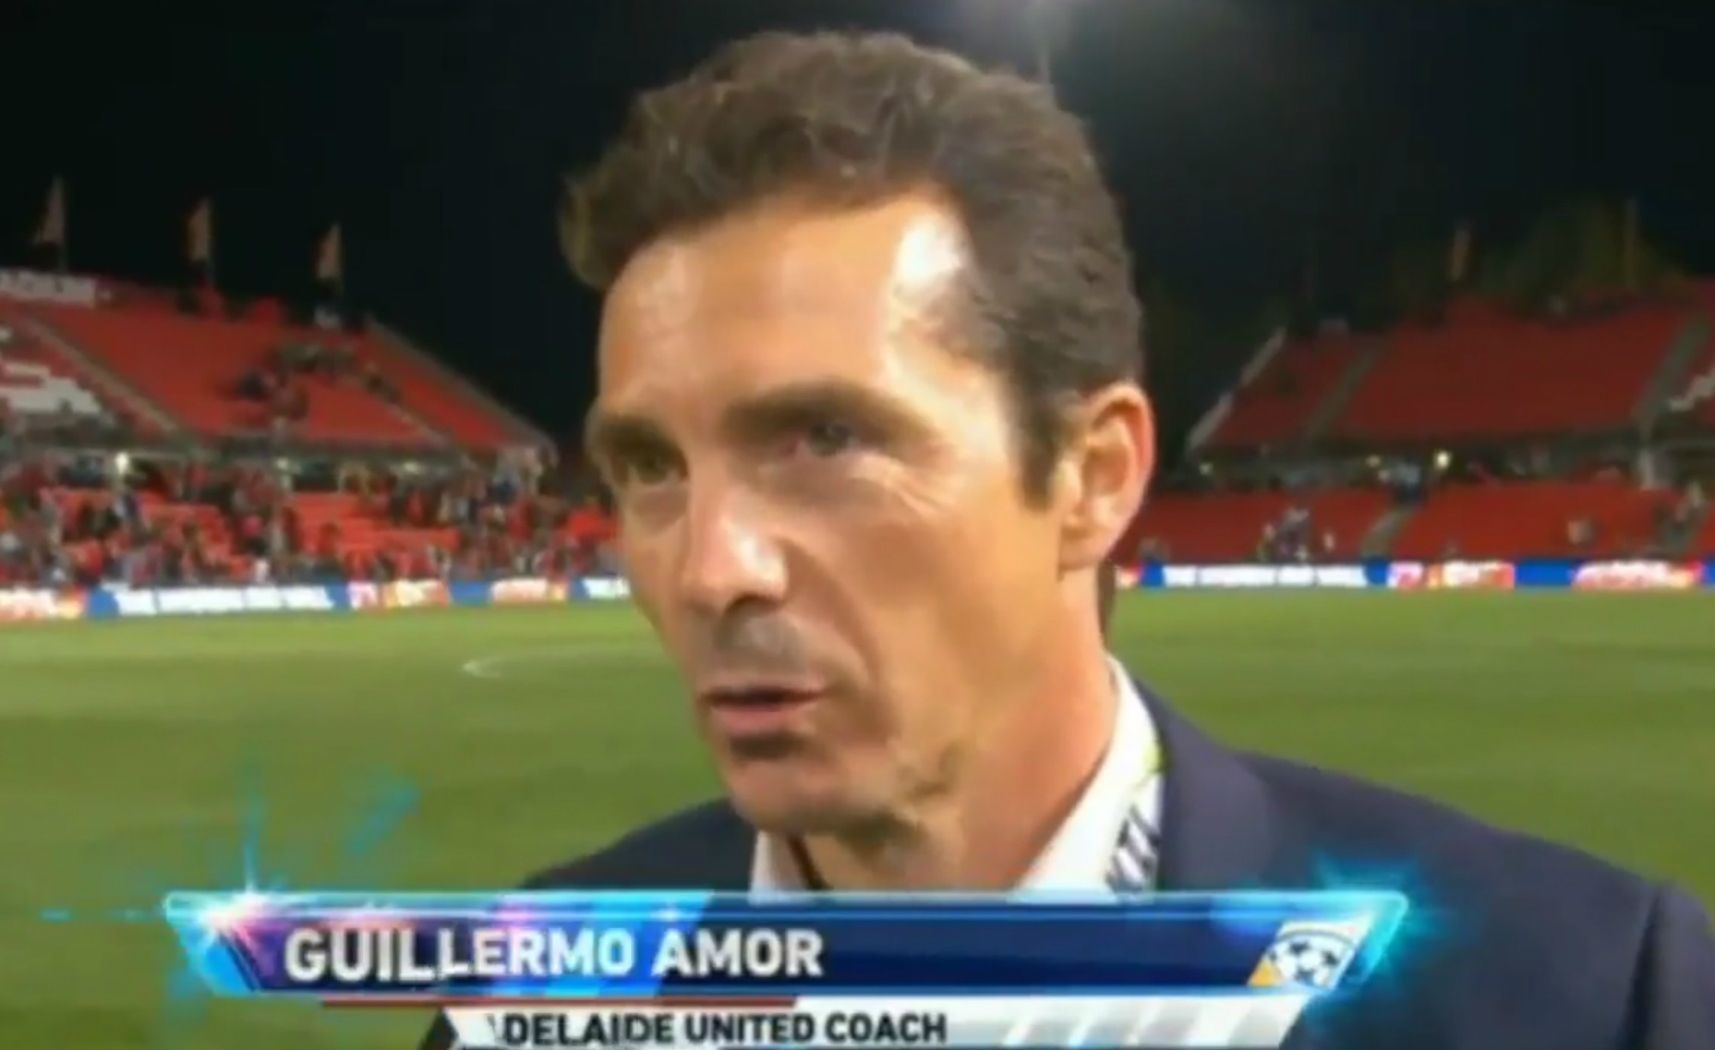 Guillermo Amor se enreda con el inglés en una entrevista